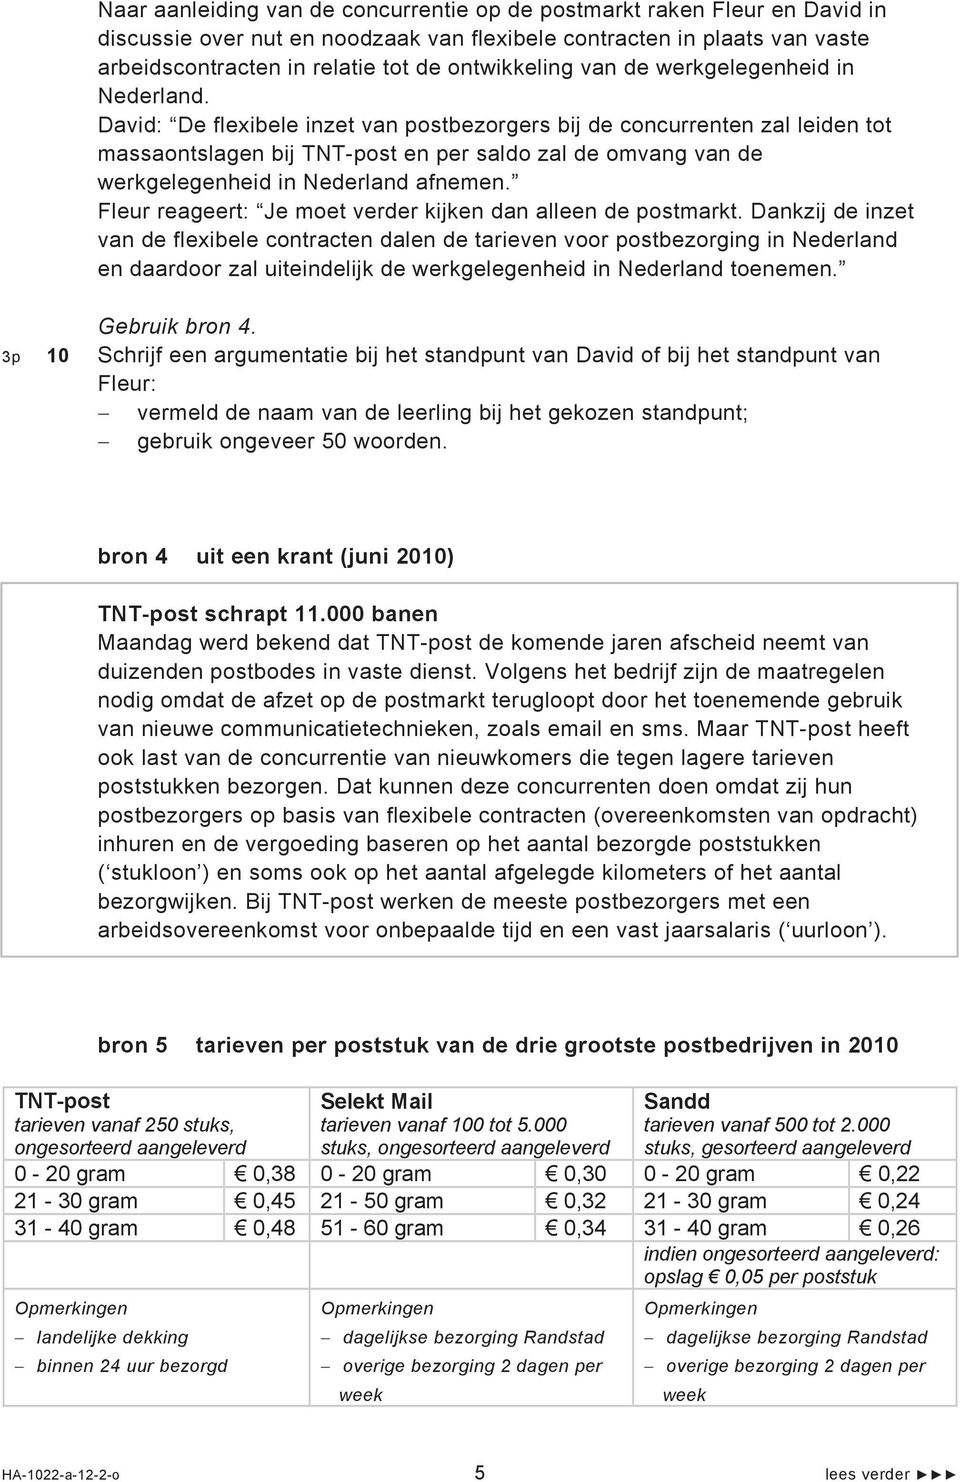 David: De flexibele inzet van postbezorgers bij de concurrenten zal leiden tot massaontslagen bij TNT-post en per saldo zal de omvang van de werkgelegenheid in Nederland afnemen.